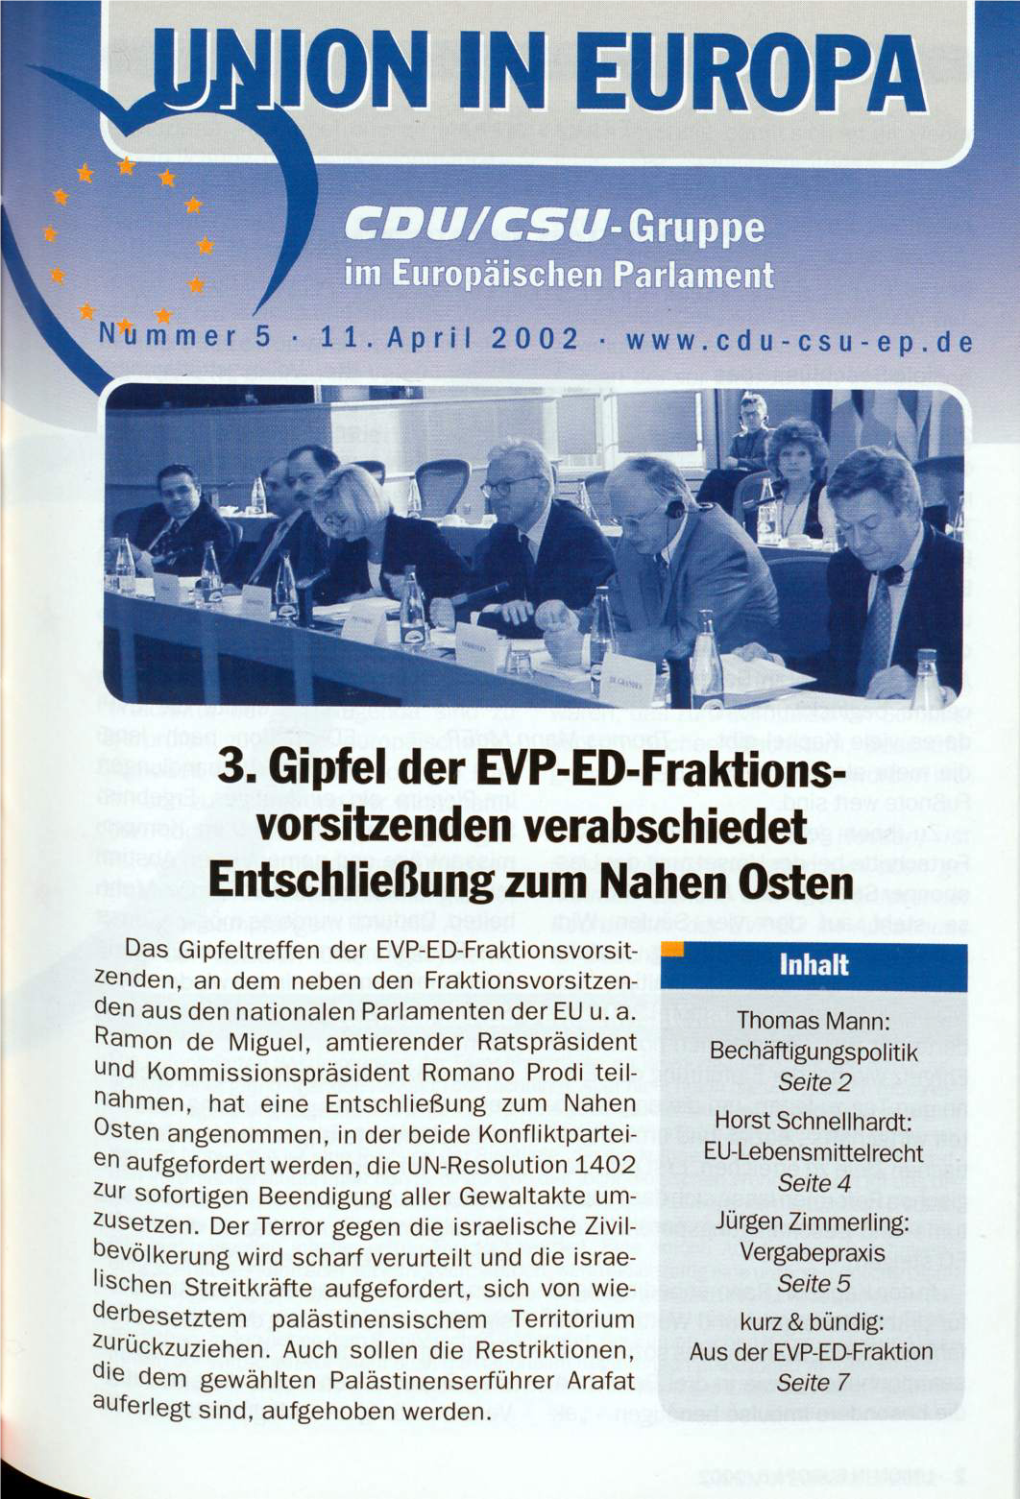 UID 2002 Nr. 11 Beilage: Union in Europa Nr. 5, Union in Deutschland